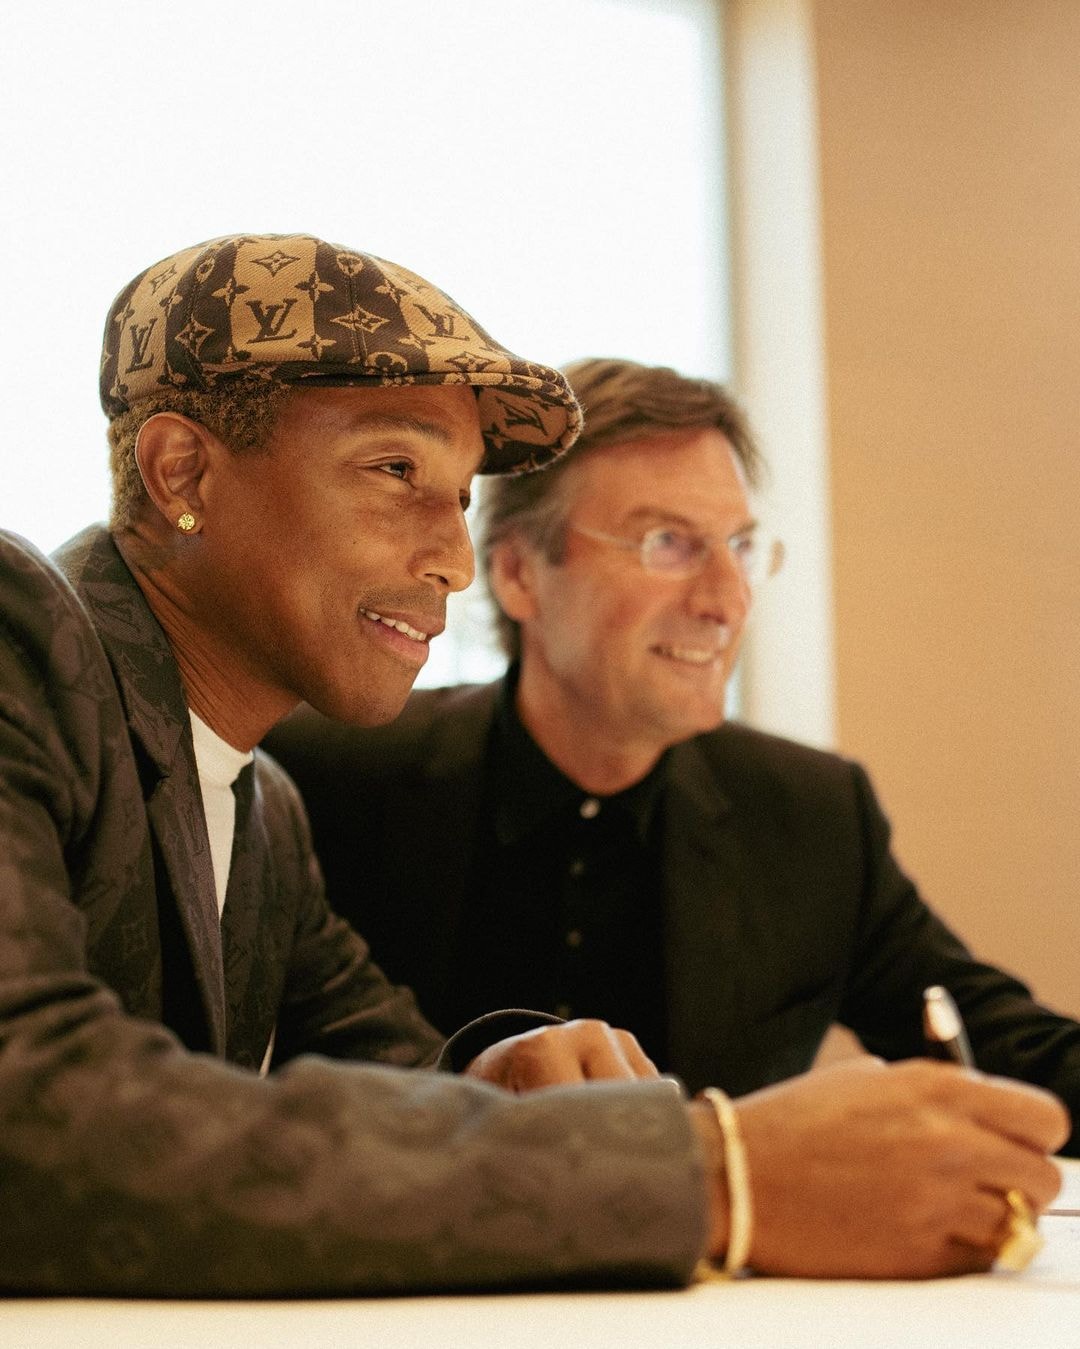 解讀 Pharrell Williams 超越時尚的創意視野、影響力與圈層資源